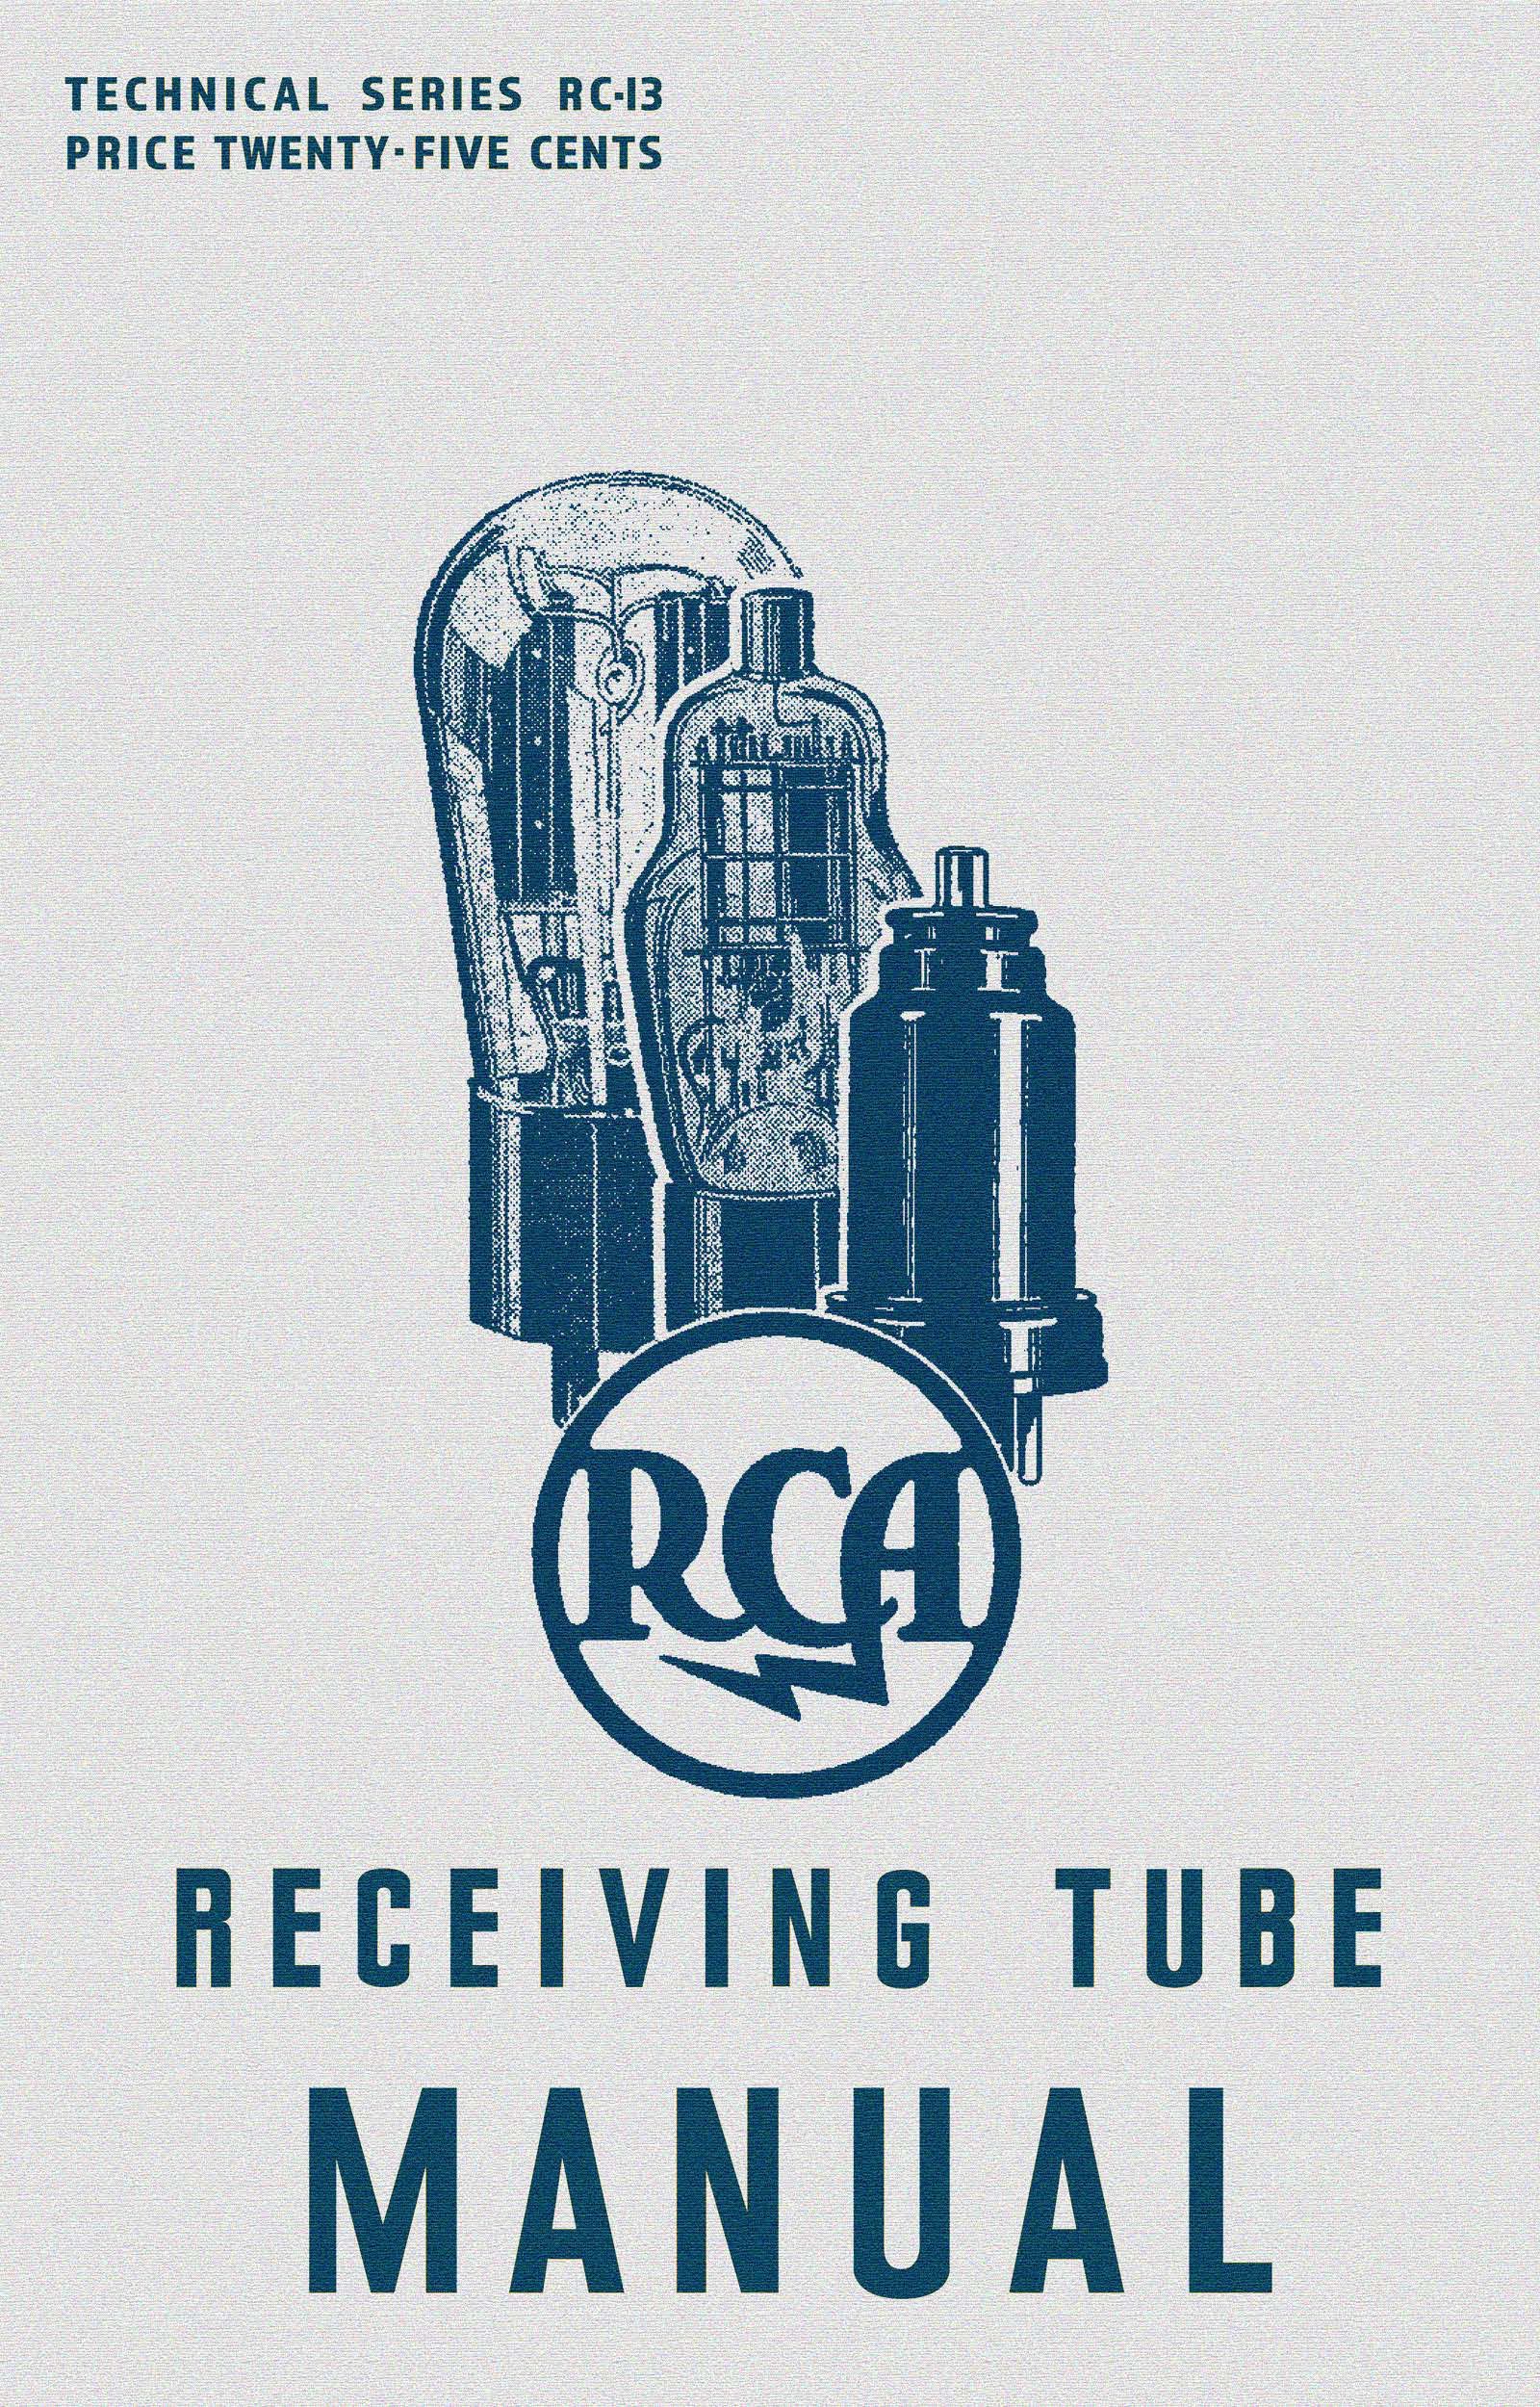 RCA Receiving Tubemanual 1937